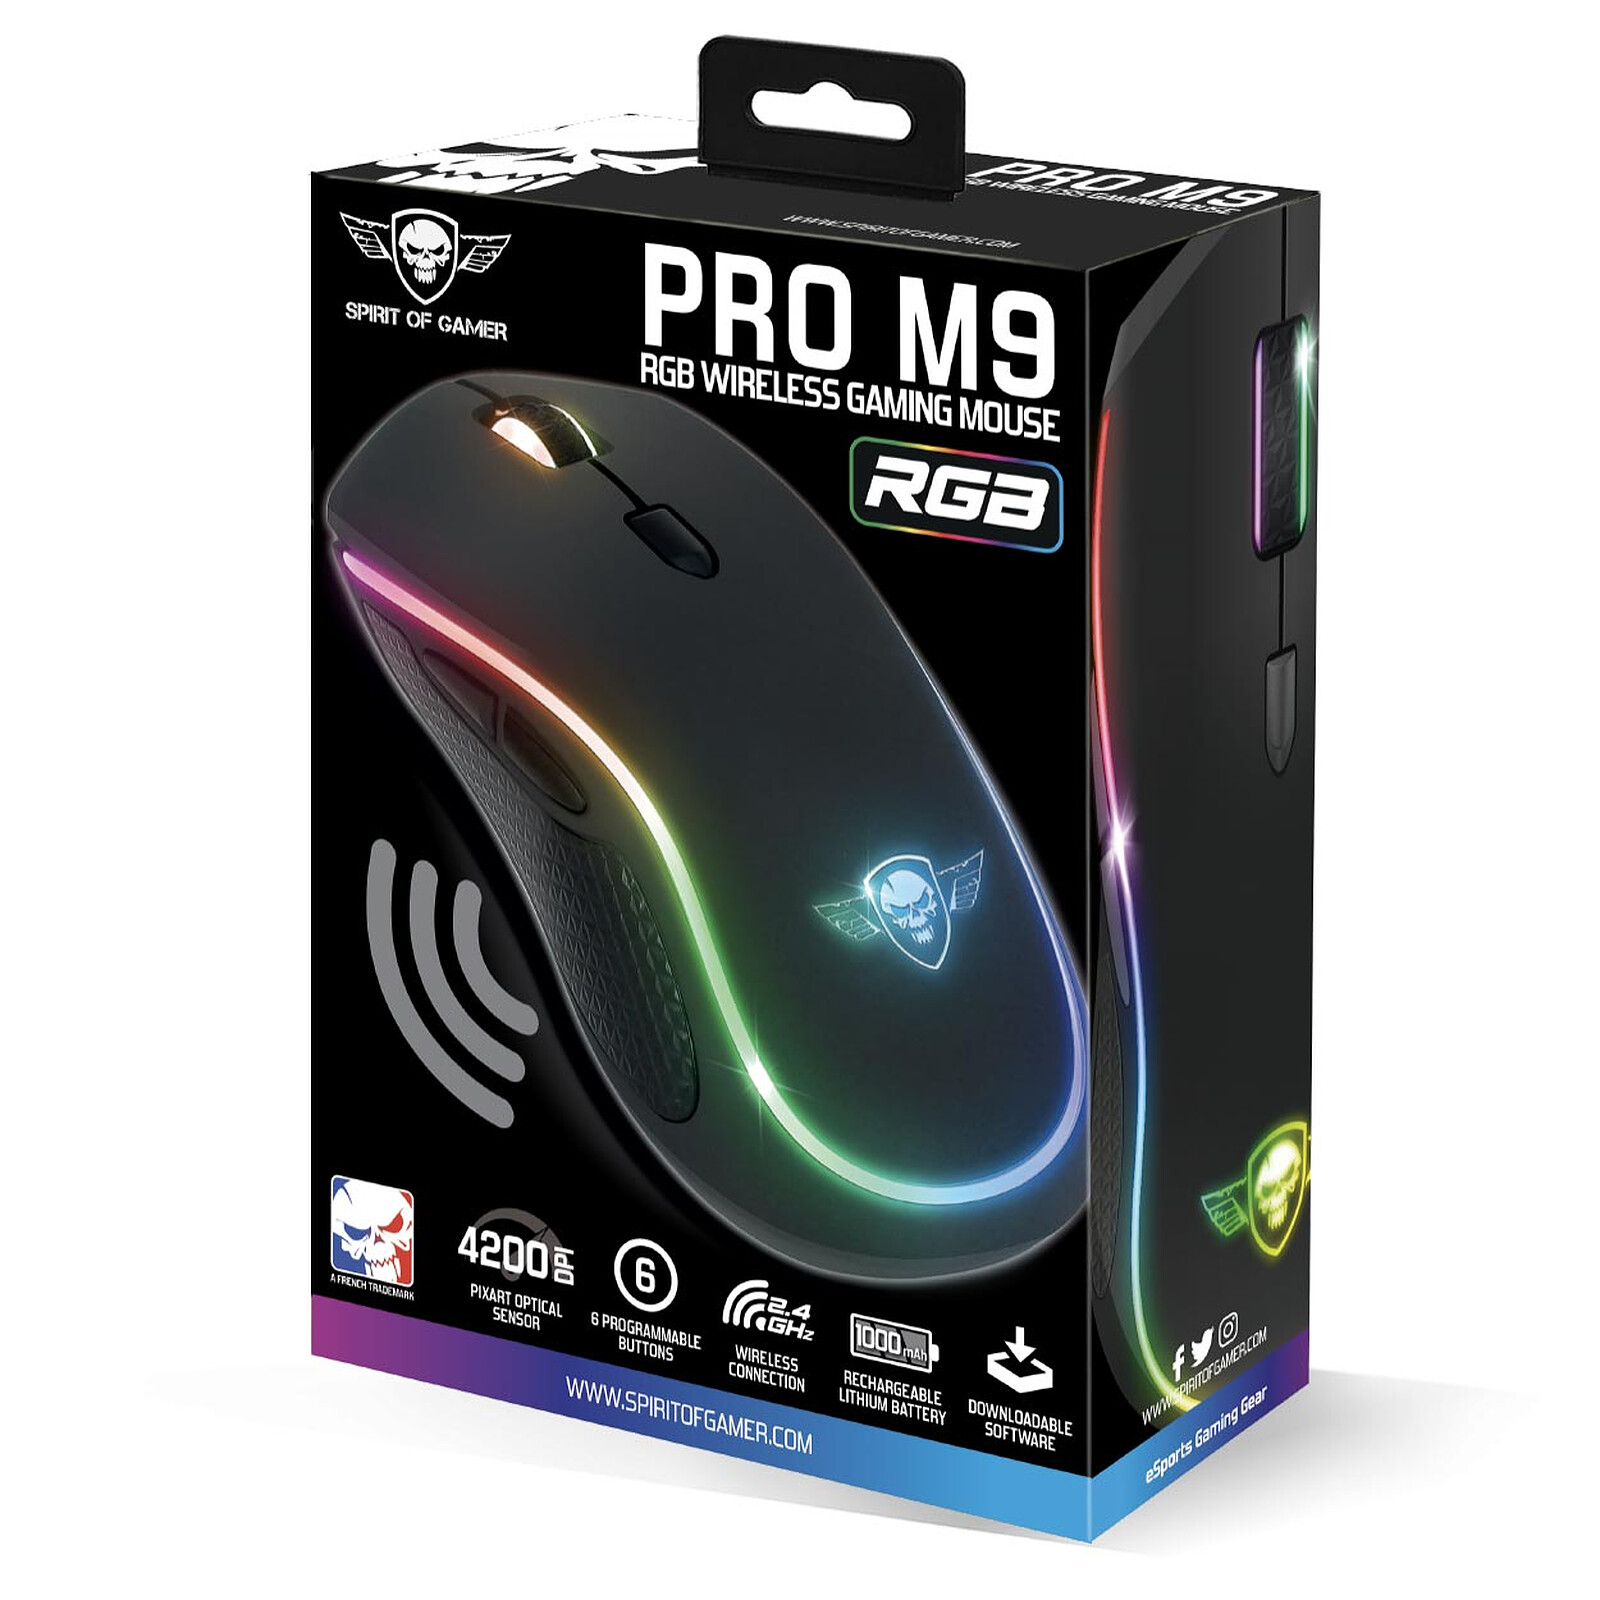 Souris gaming Pro M9 sans fil - LED RGB - Spirit of Gamer